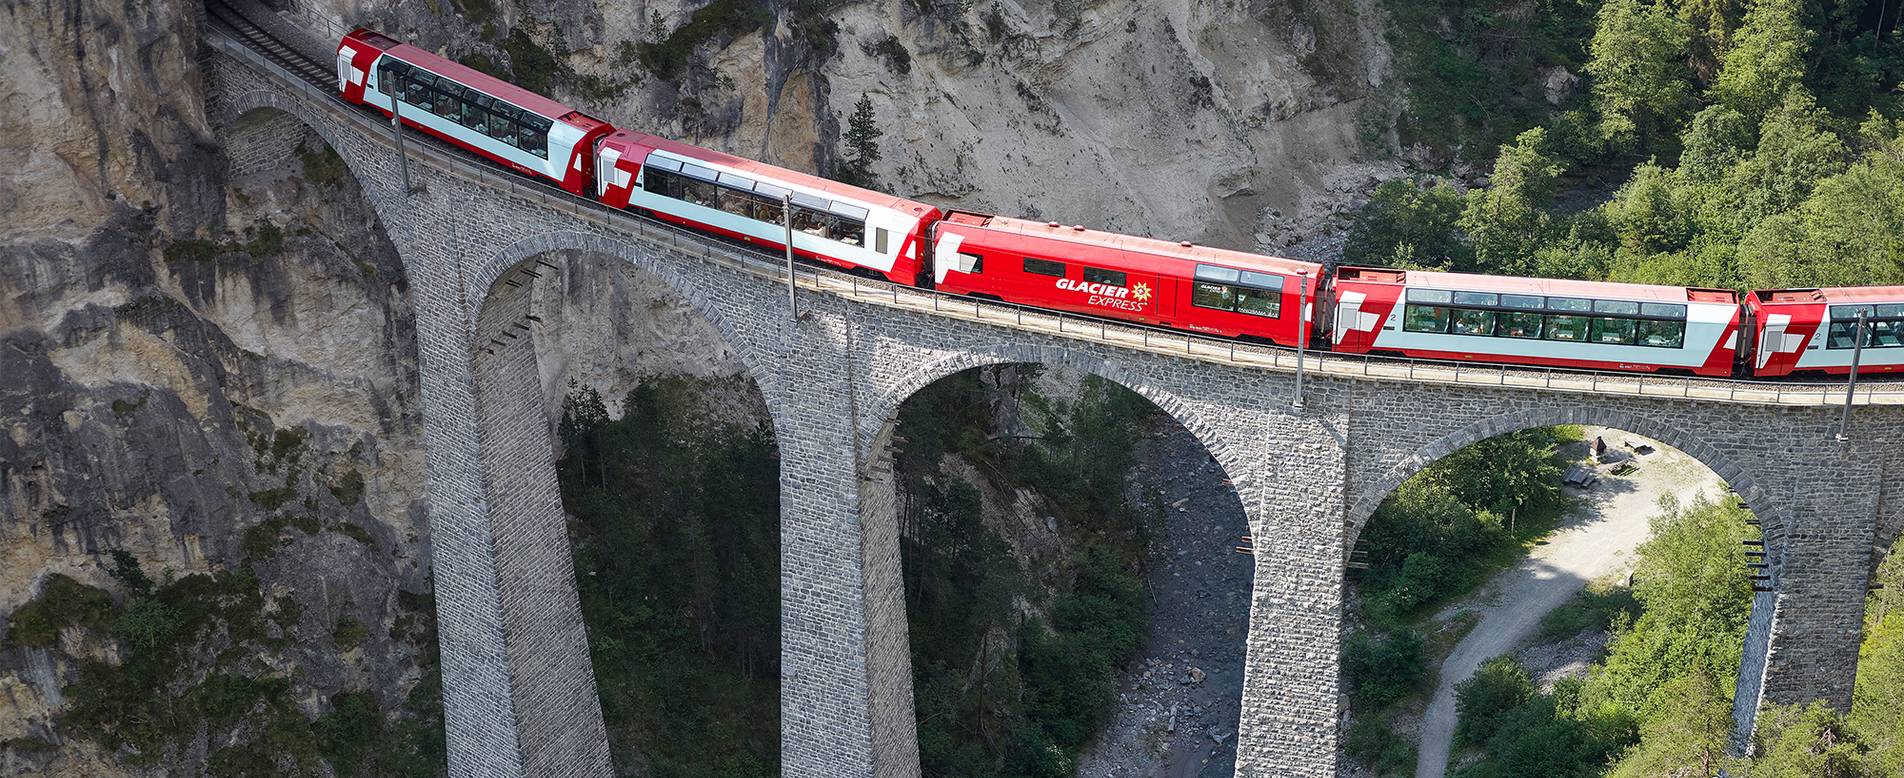 冰川快车是欧洲风景最优美的火车车次中